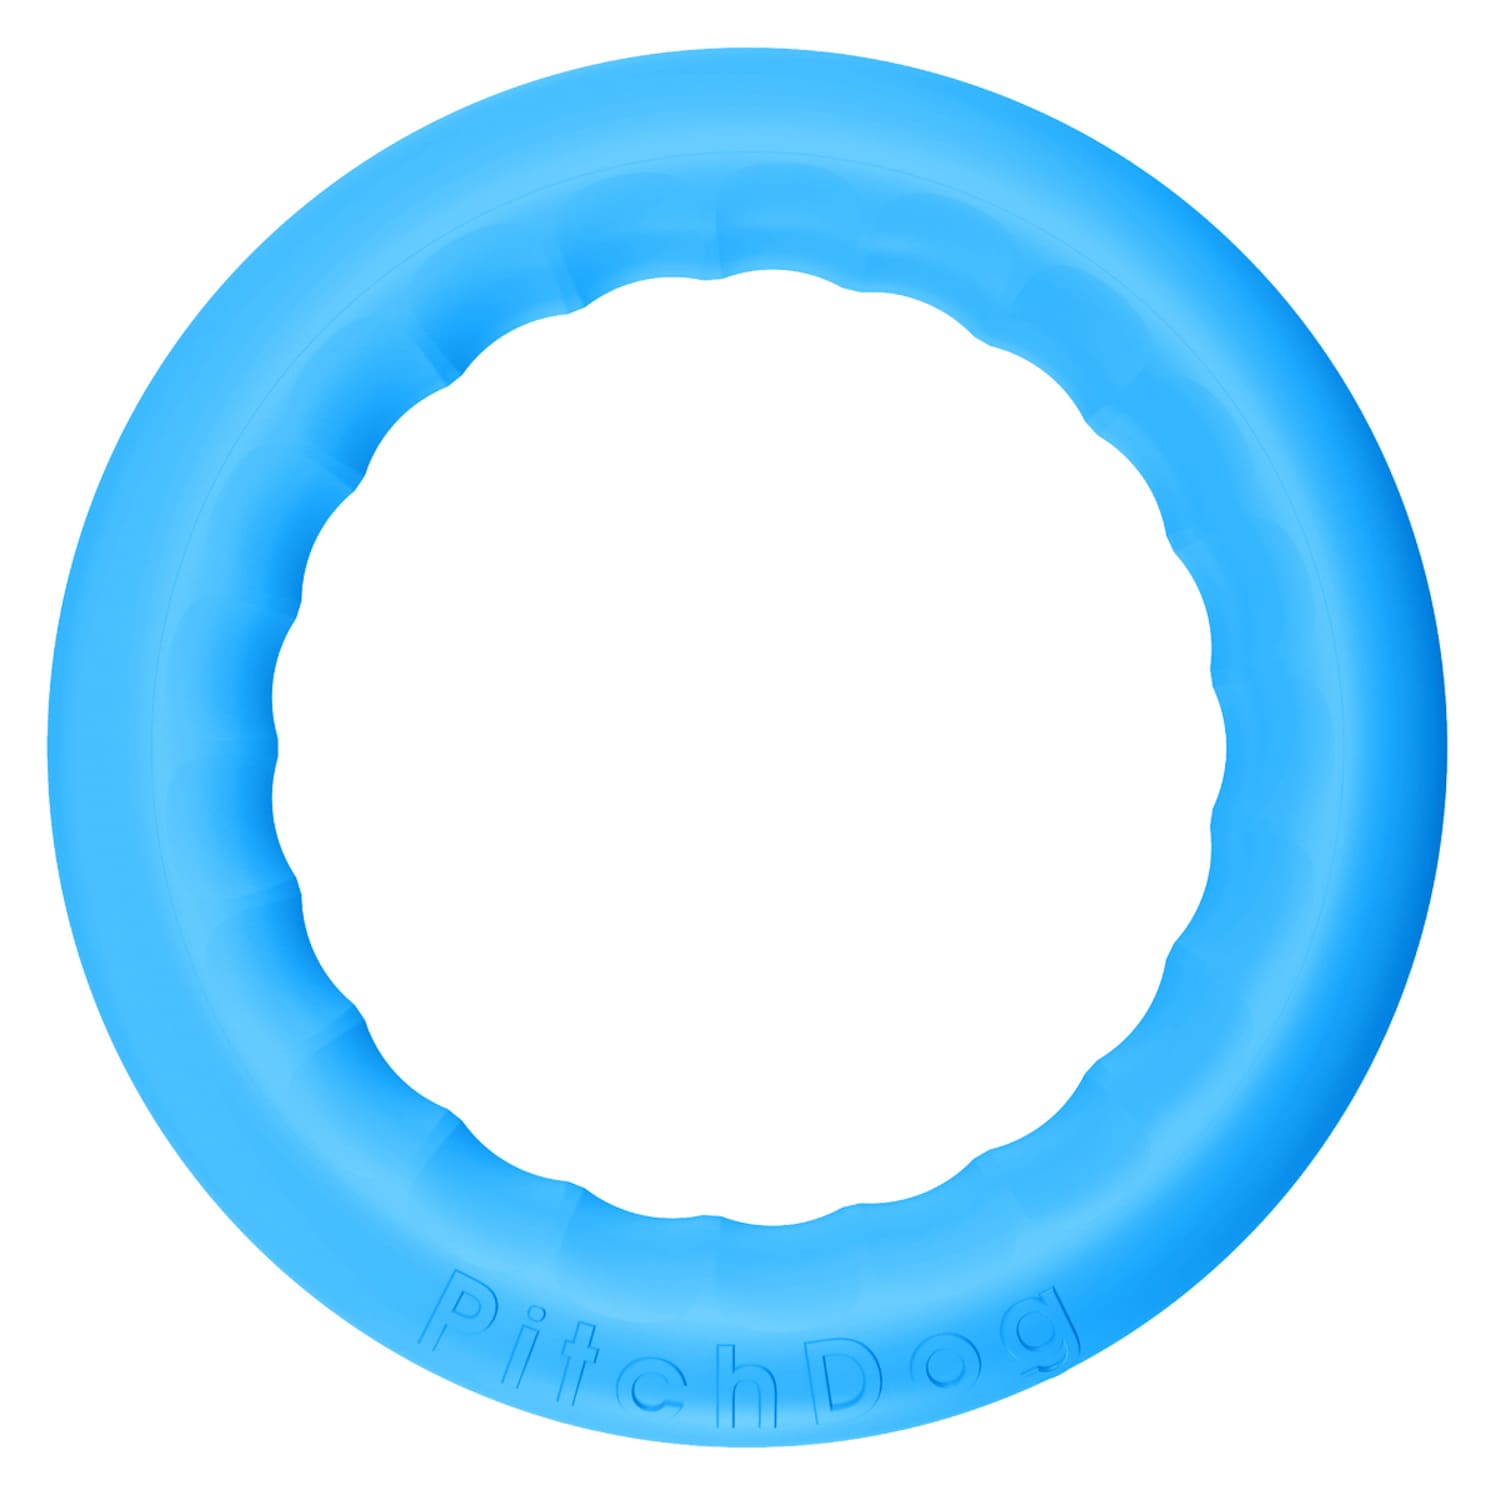 Игрушка для собак PitchDog кольцо для апортировки d 20 см голубое